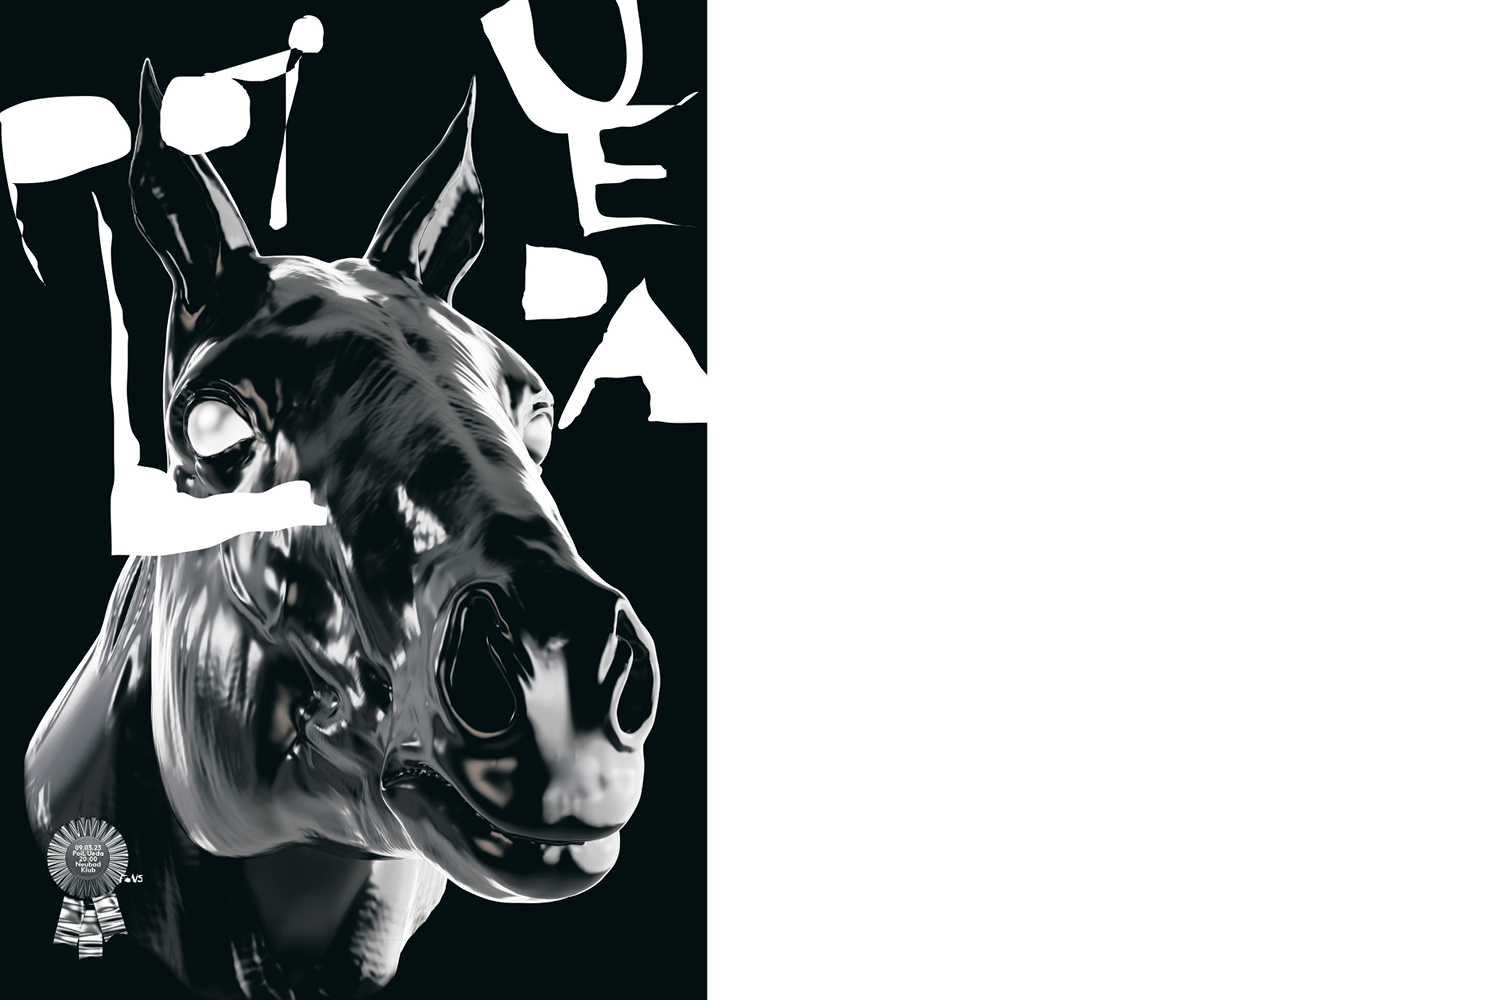 Plakat für das Konzert von Poil Ueda auf dem ein grosser, schwarzer Pferdekopf aus metallischem Material und einem krackeligen, weissen Schriftzug vom Bandnamen zu sehen ist.